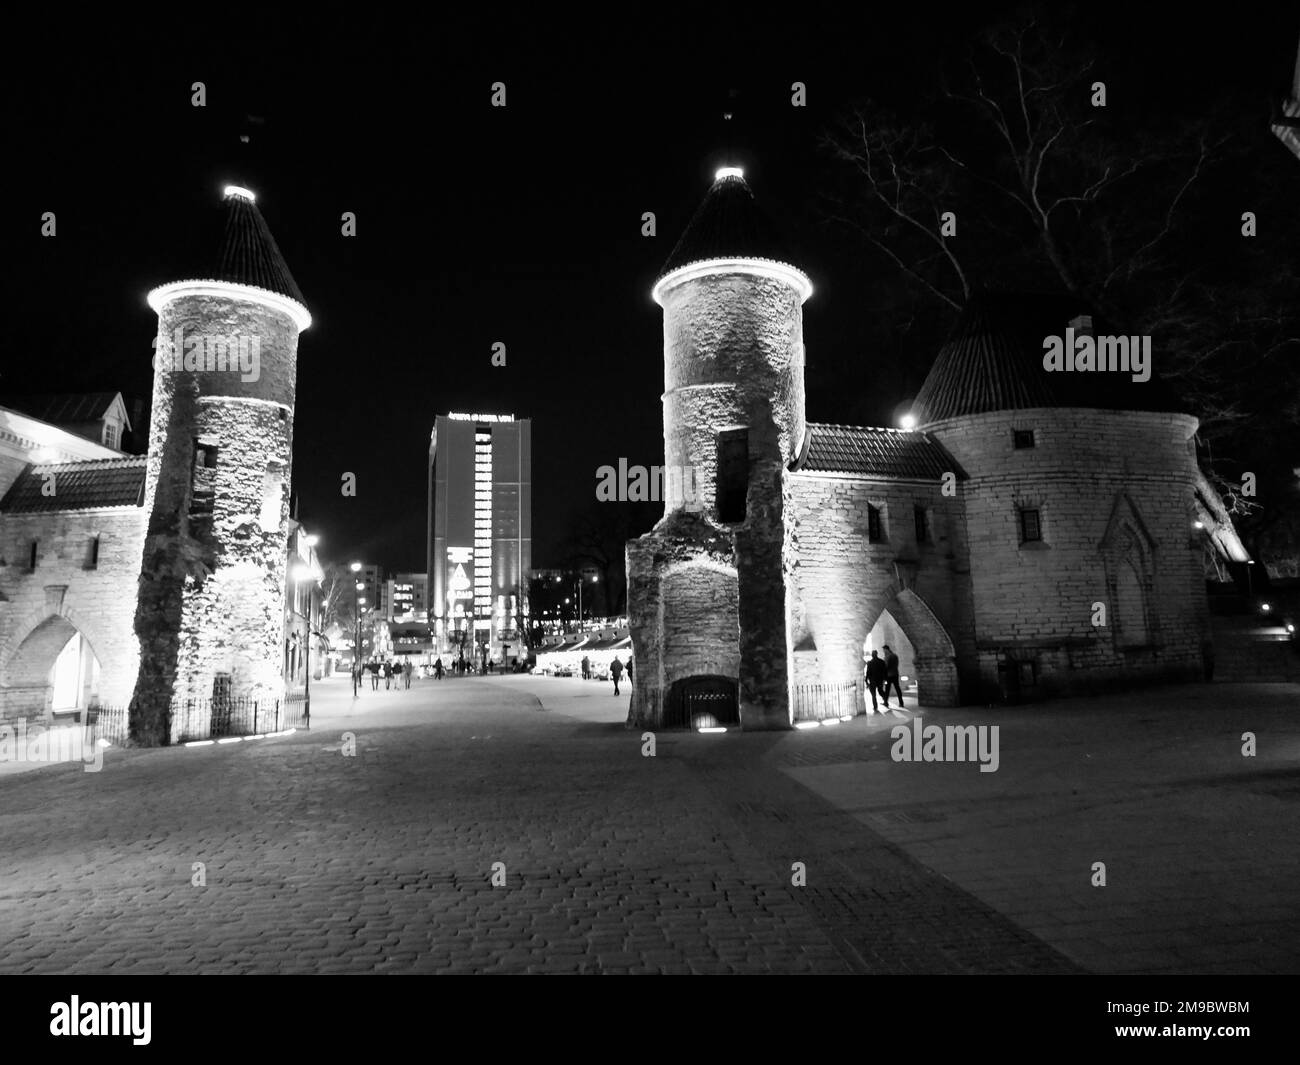 Tallinn old city at night Stock Photo